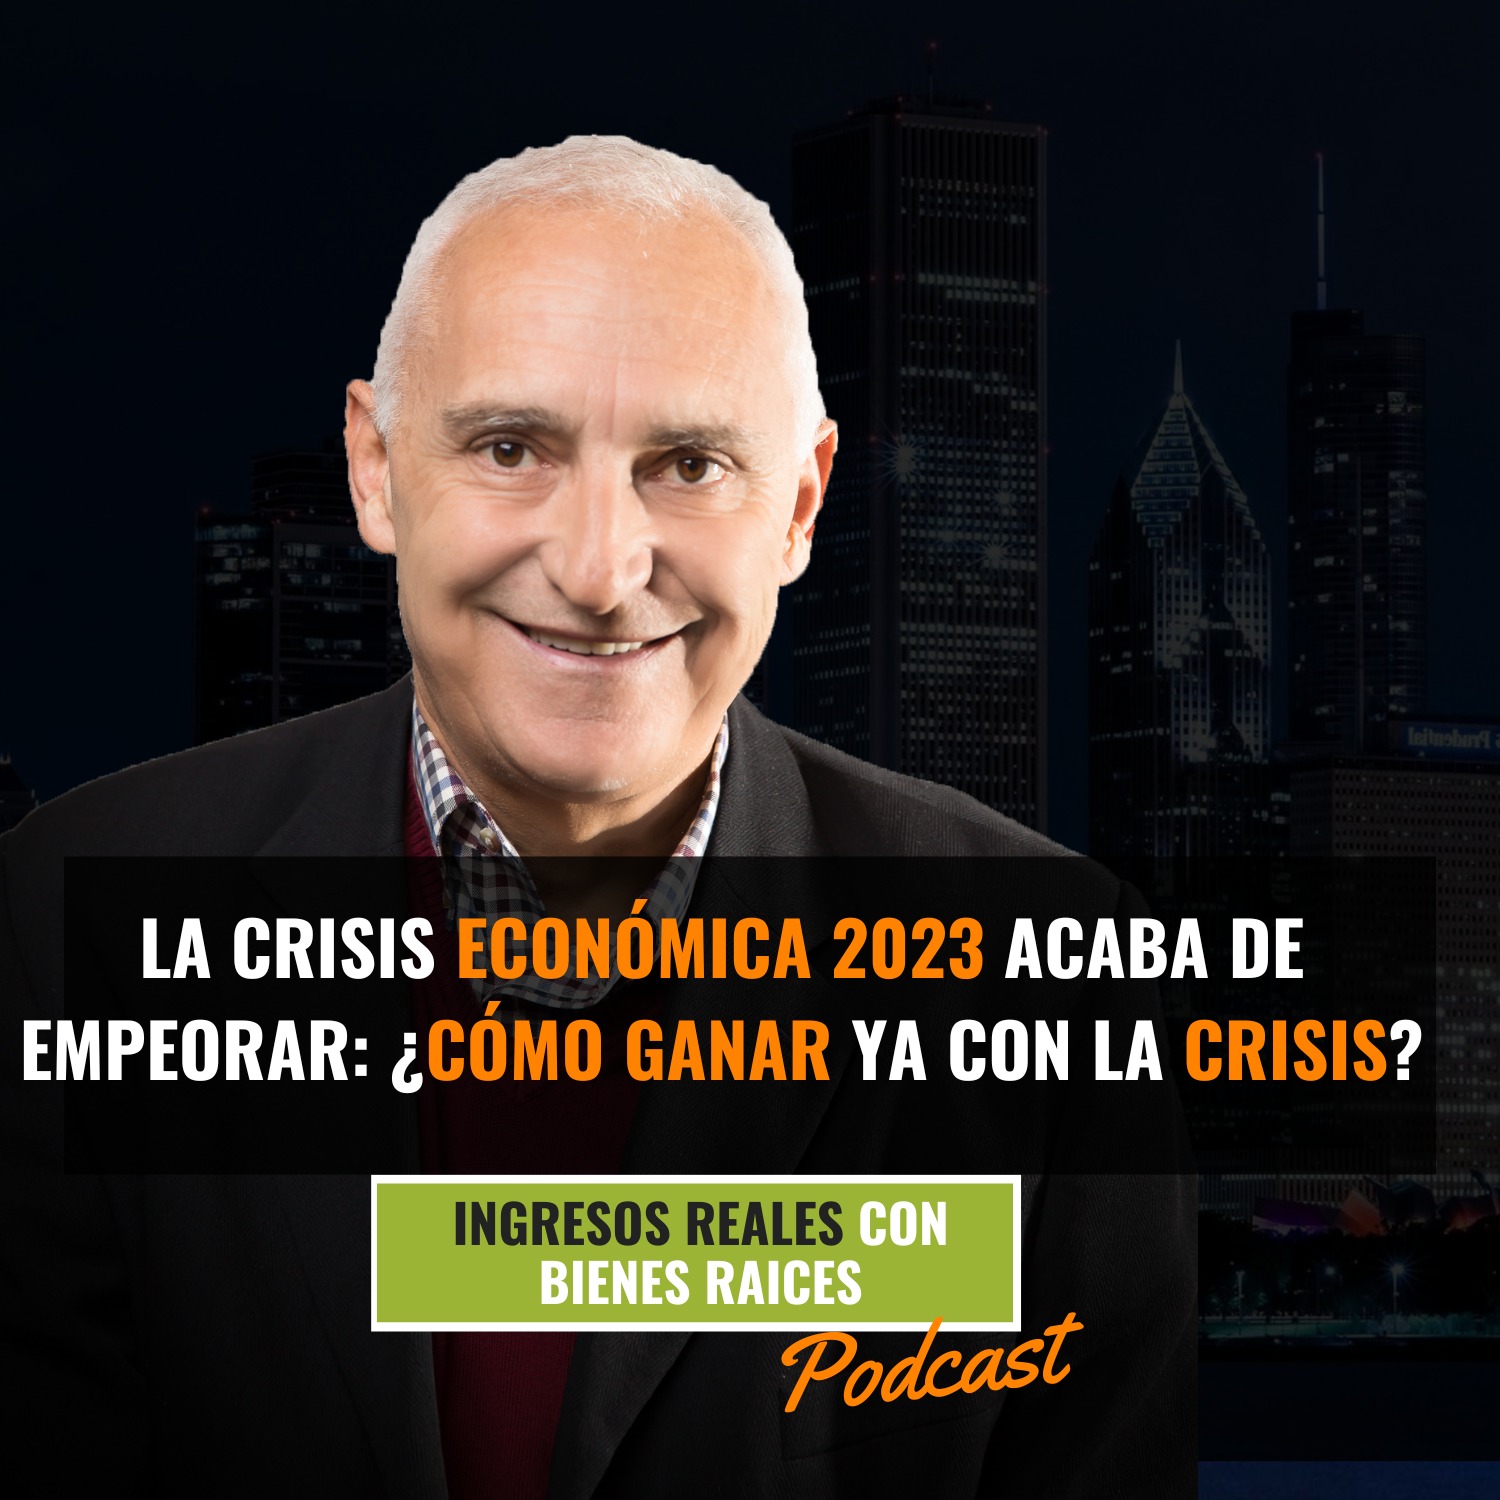 La Crisis Económica 2023 Acaba de Empeorar: ¿CÓMO GANAR YA CON LA CRISIS?